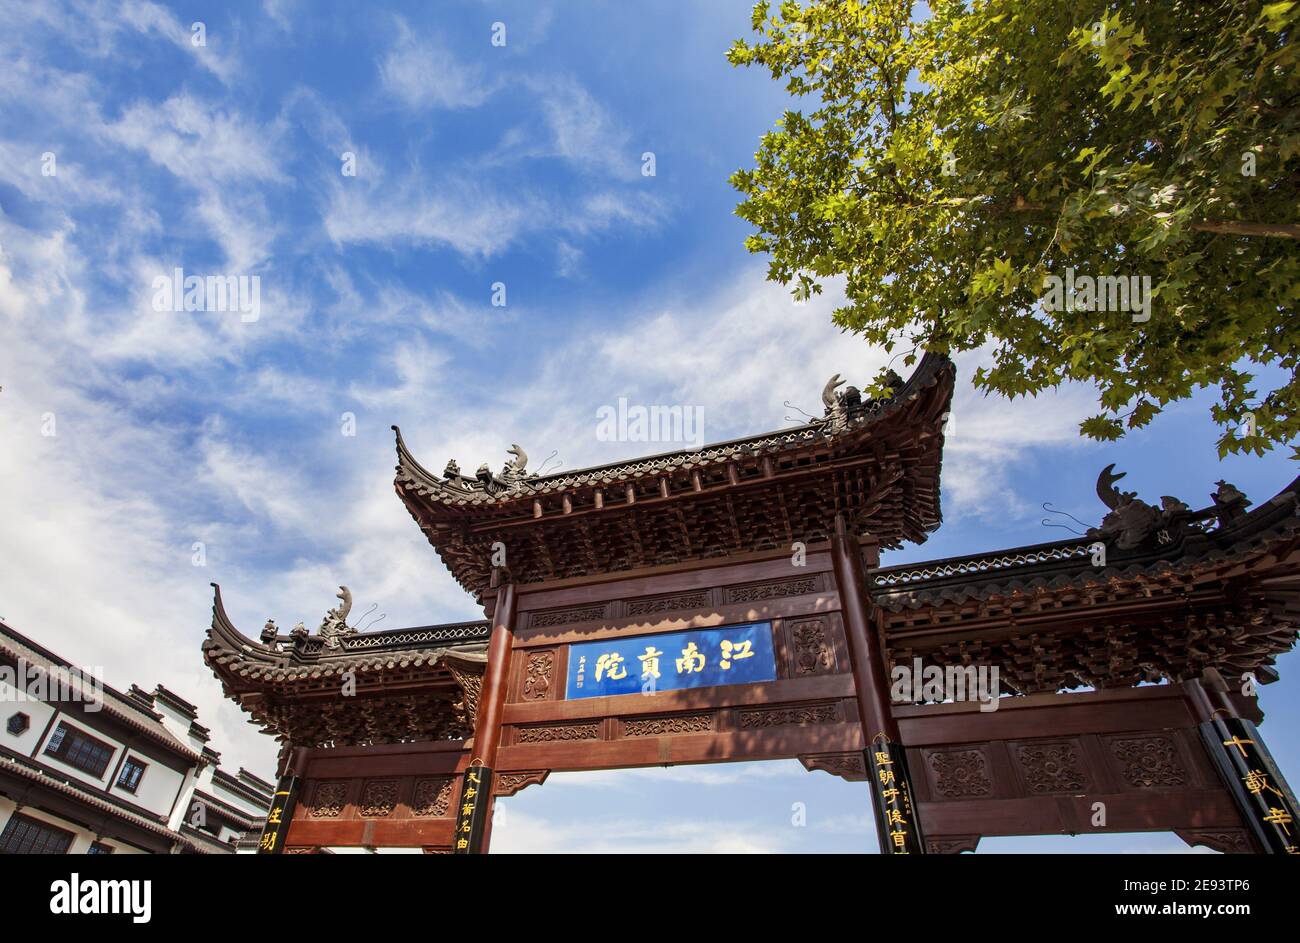 Confucius temple in nanjing, jiangsu province Stock Photo